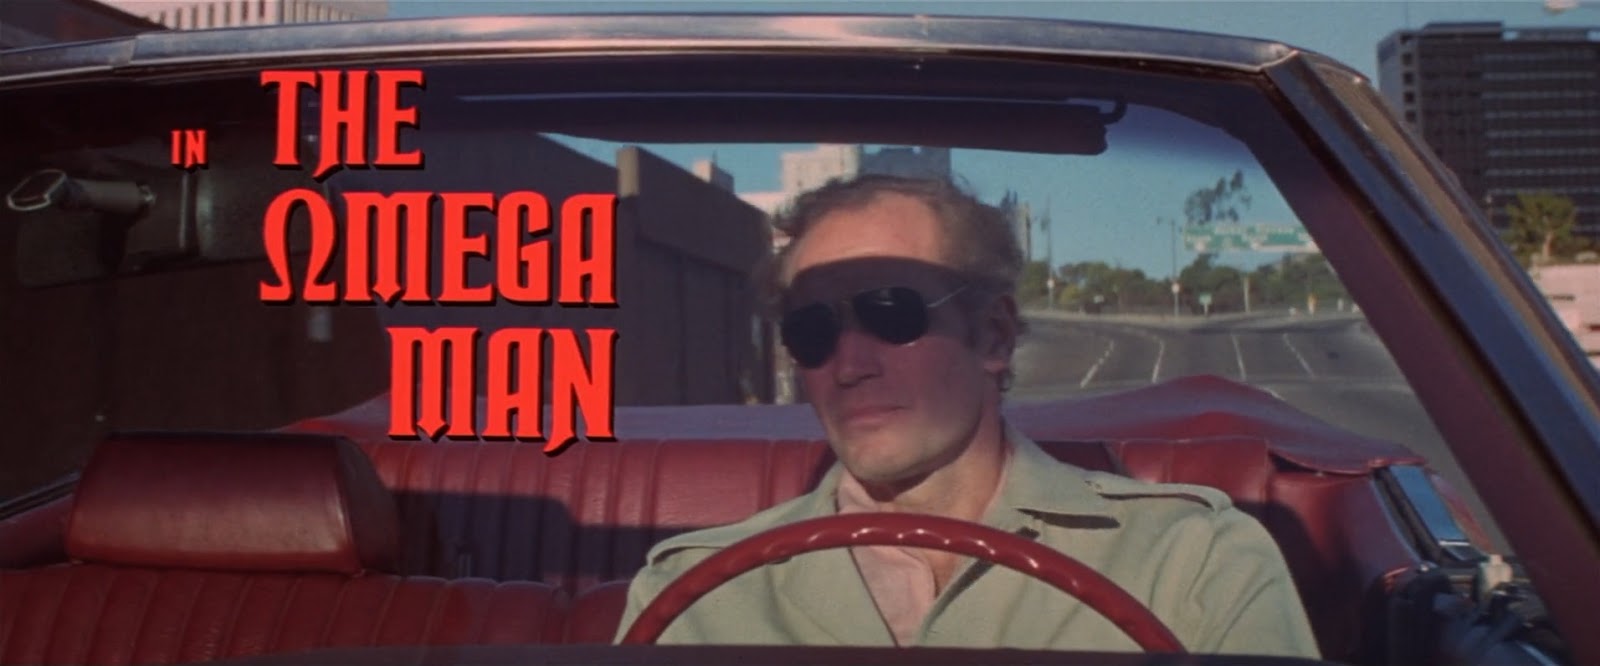 El último hombre vivo (1971)|1080p|Latino|Mega